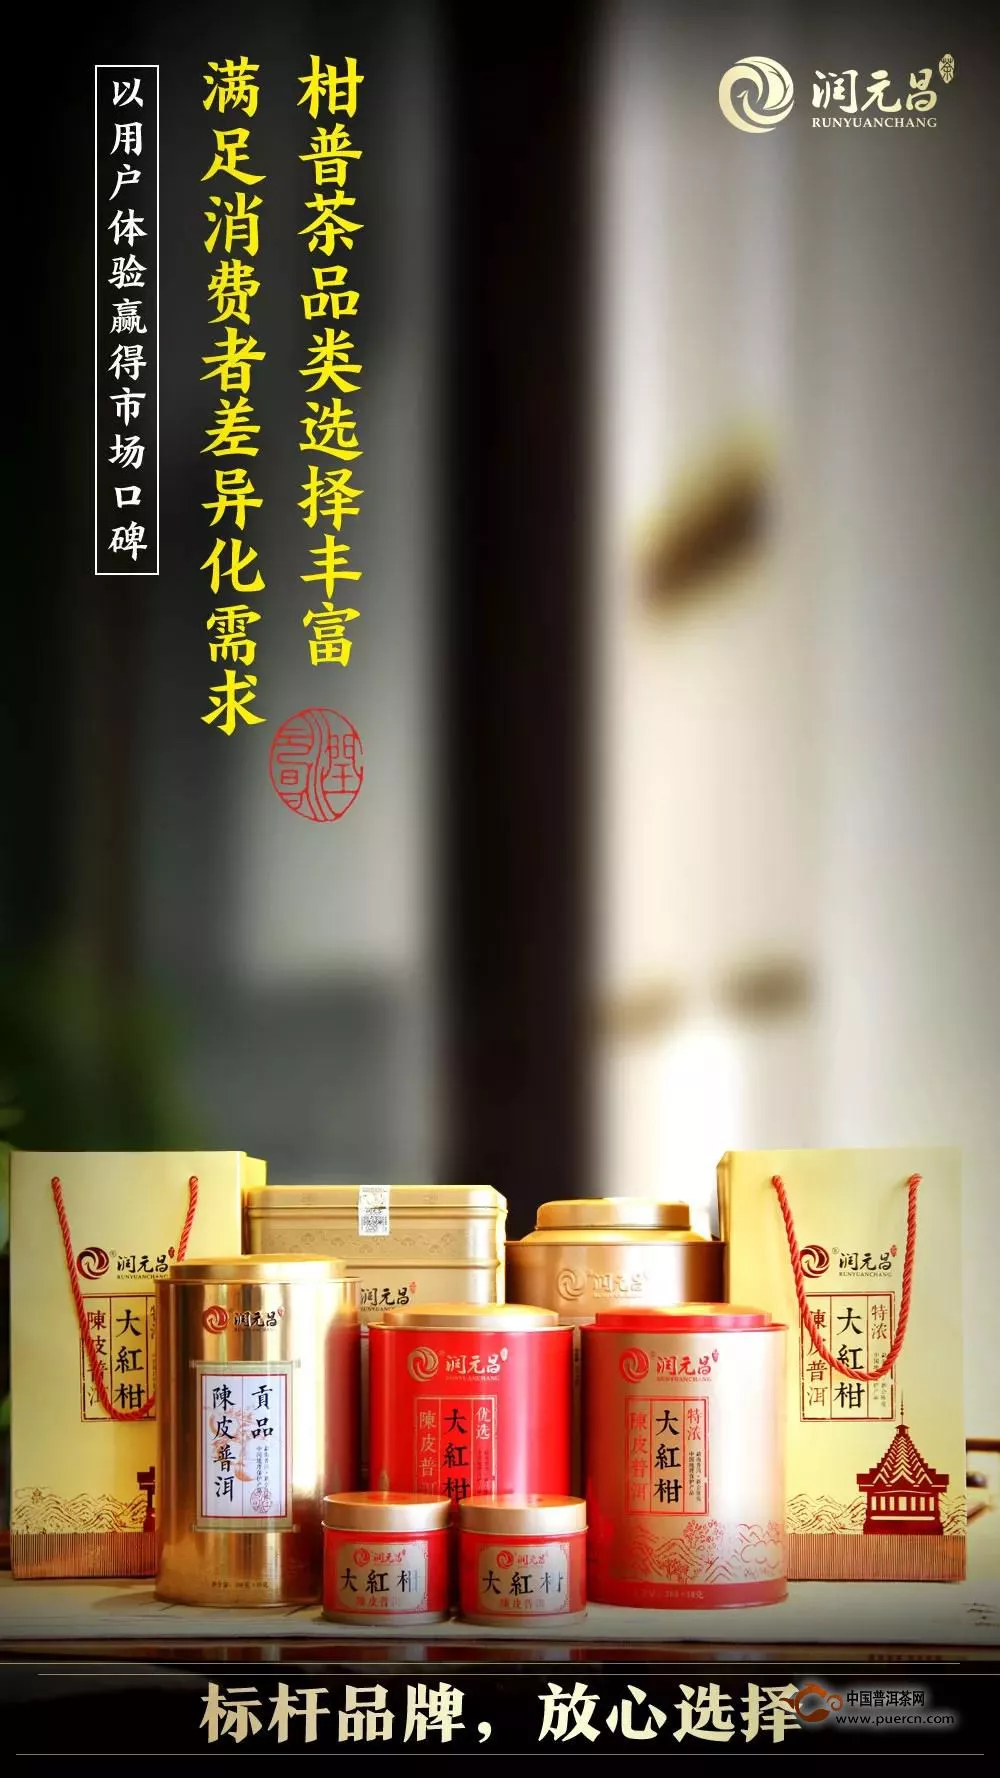 正宗地道，一贯品质：润元昌柑普茶，以品质和创新领跑市场